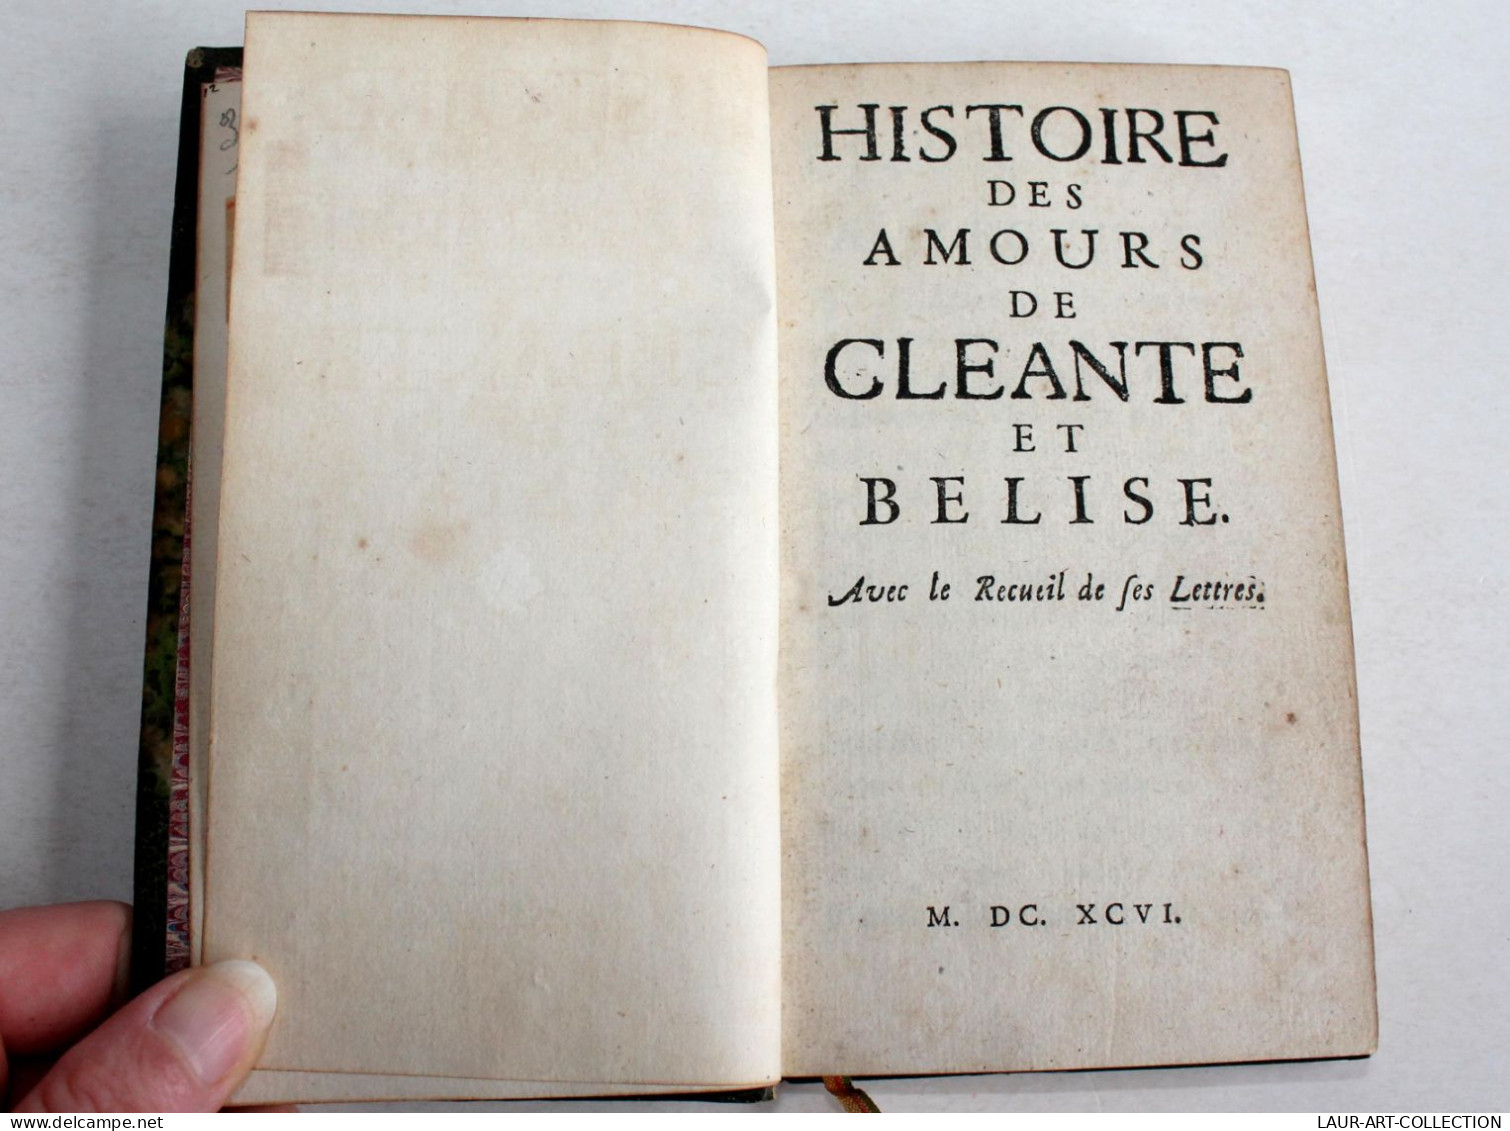 INTROUVABLE! HISTOIRE DES AMOURS DE CLEANTE Et BELISE + RECUEIL DES LETTRES 1696 / ANCIEN LIVRE XVIIe SIECLE (2603.33) - Before 18th Century